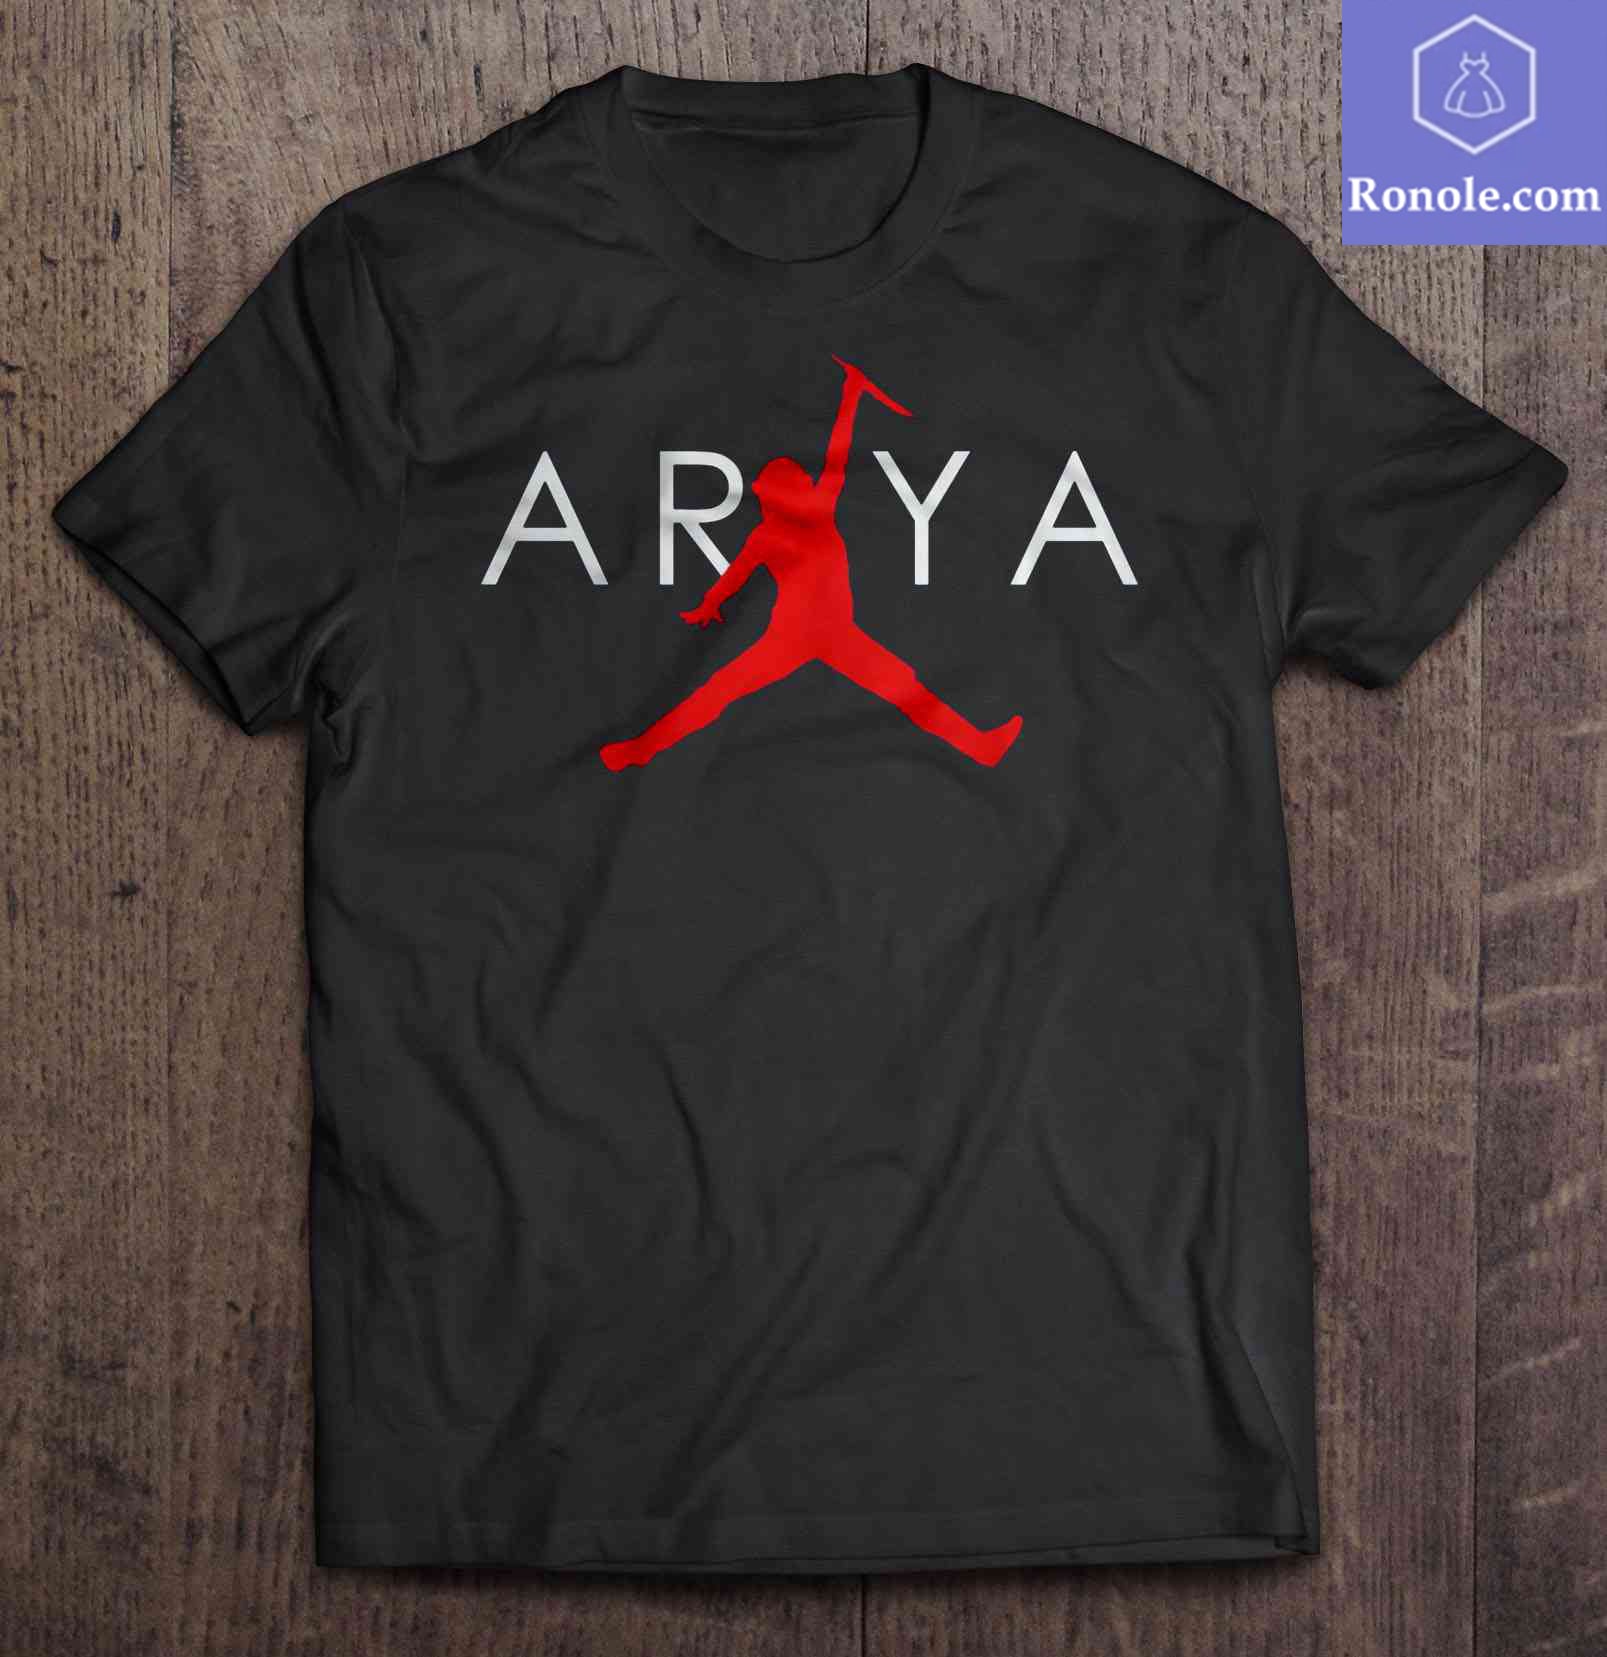 arya t shirt jordan